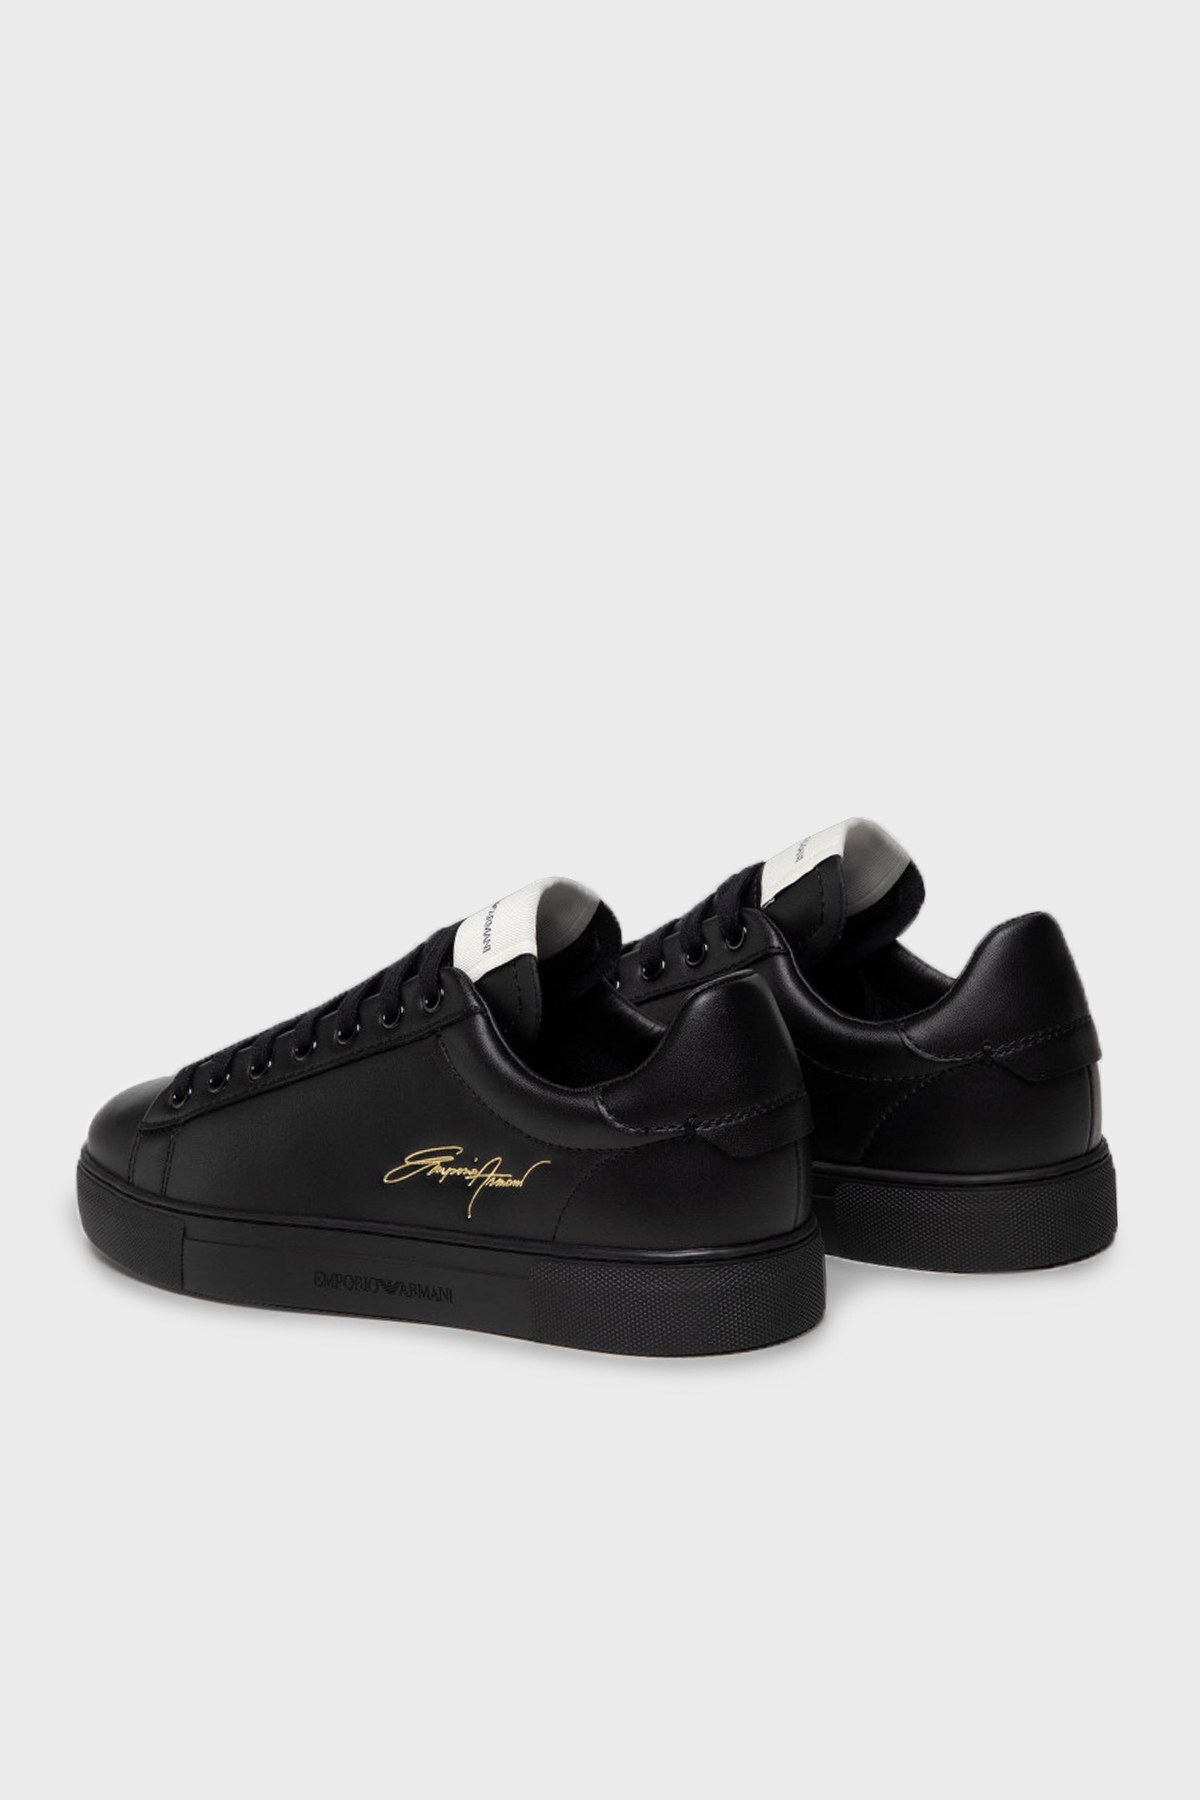 Emporio Armani Deri Sneaker Erkek Ayakkabı X4X565 XM993 00002 SİYAH